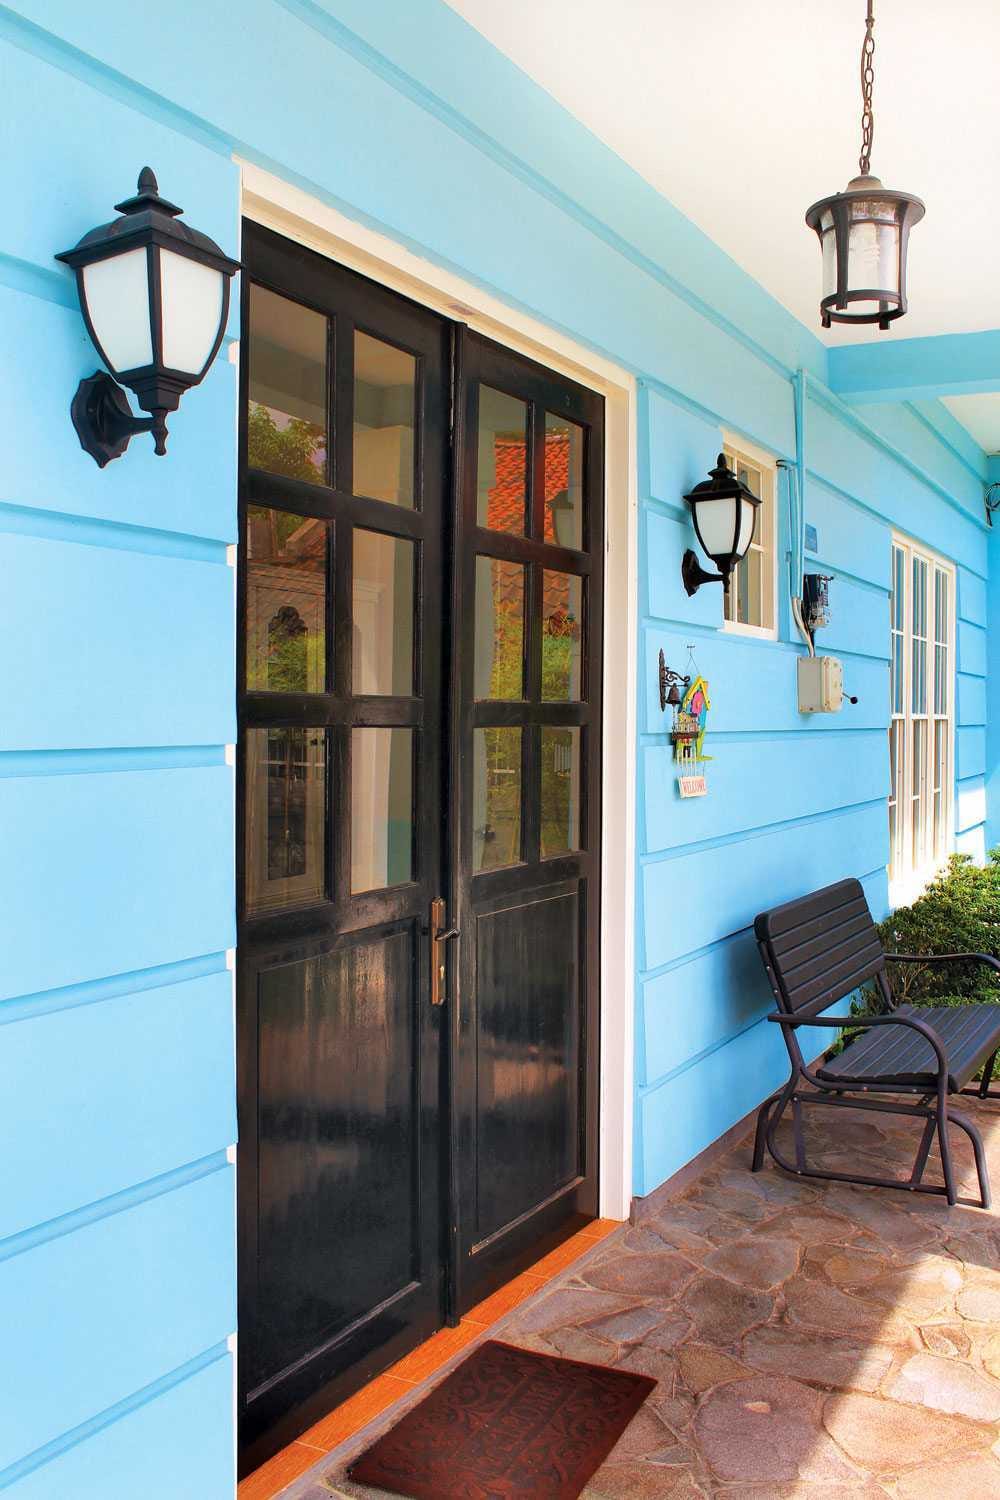 Sentuhan Warna Turquoise Untuk Tampilan Rumah Minimalis Yang Stylish Dan Modern By Arsitagcom Medium